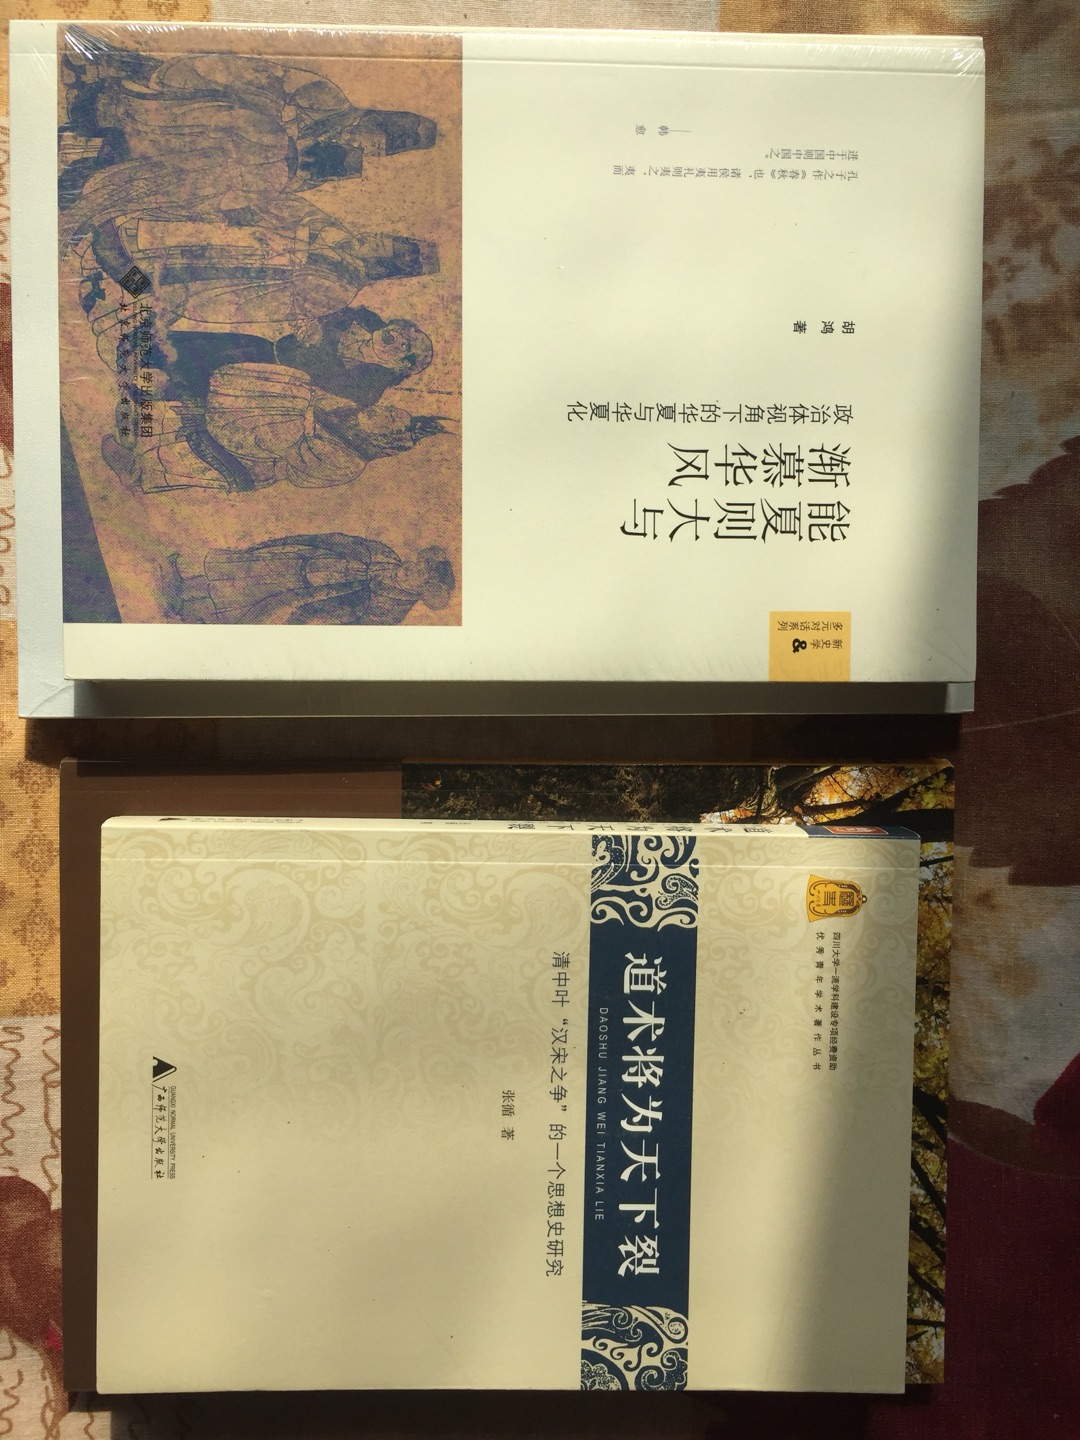 川大张循老师的博士论文，十年磨一剑才出版，内容十分精彩